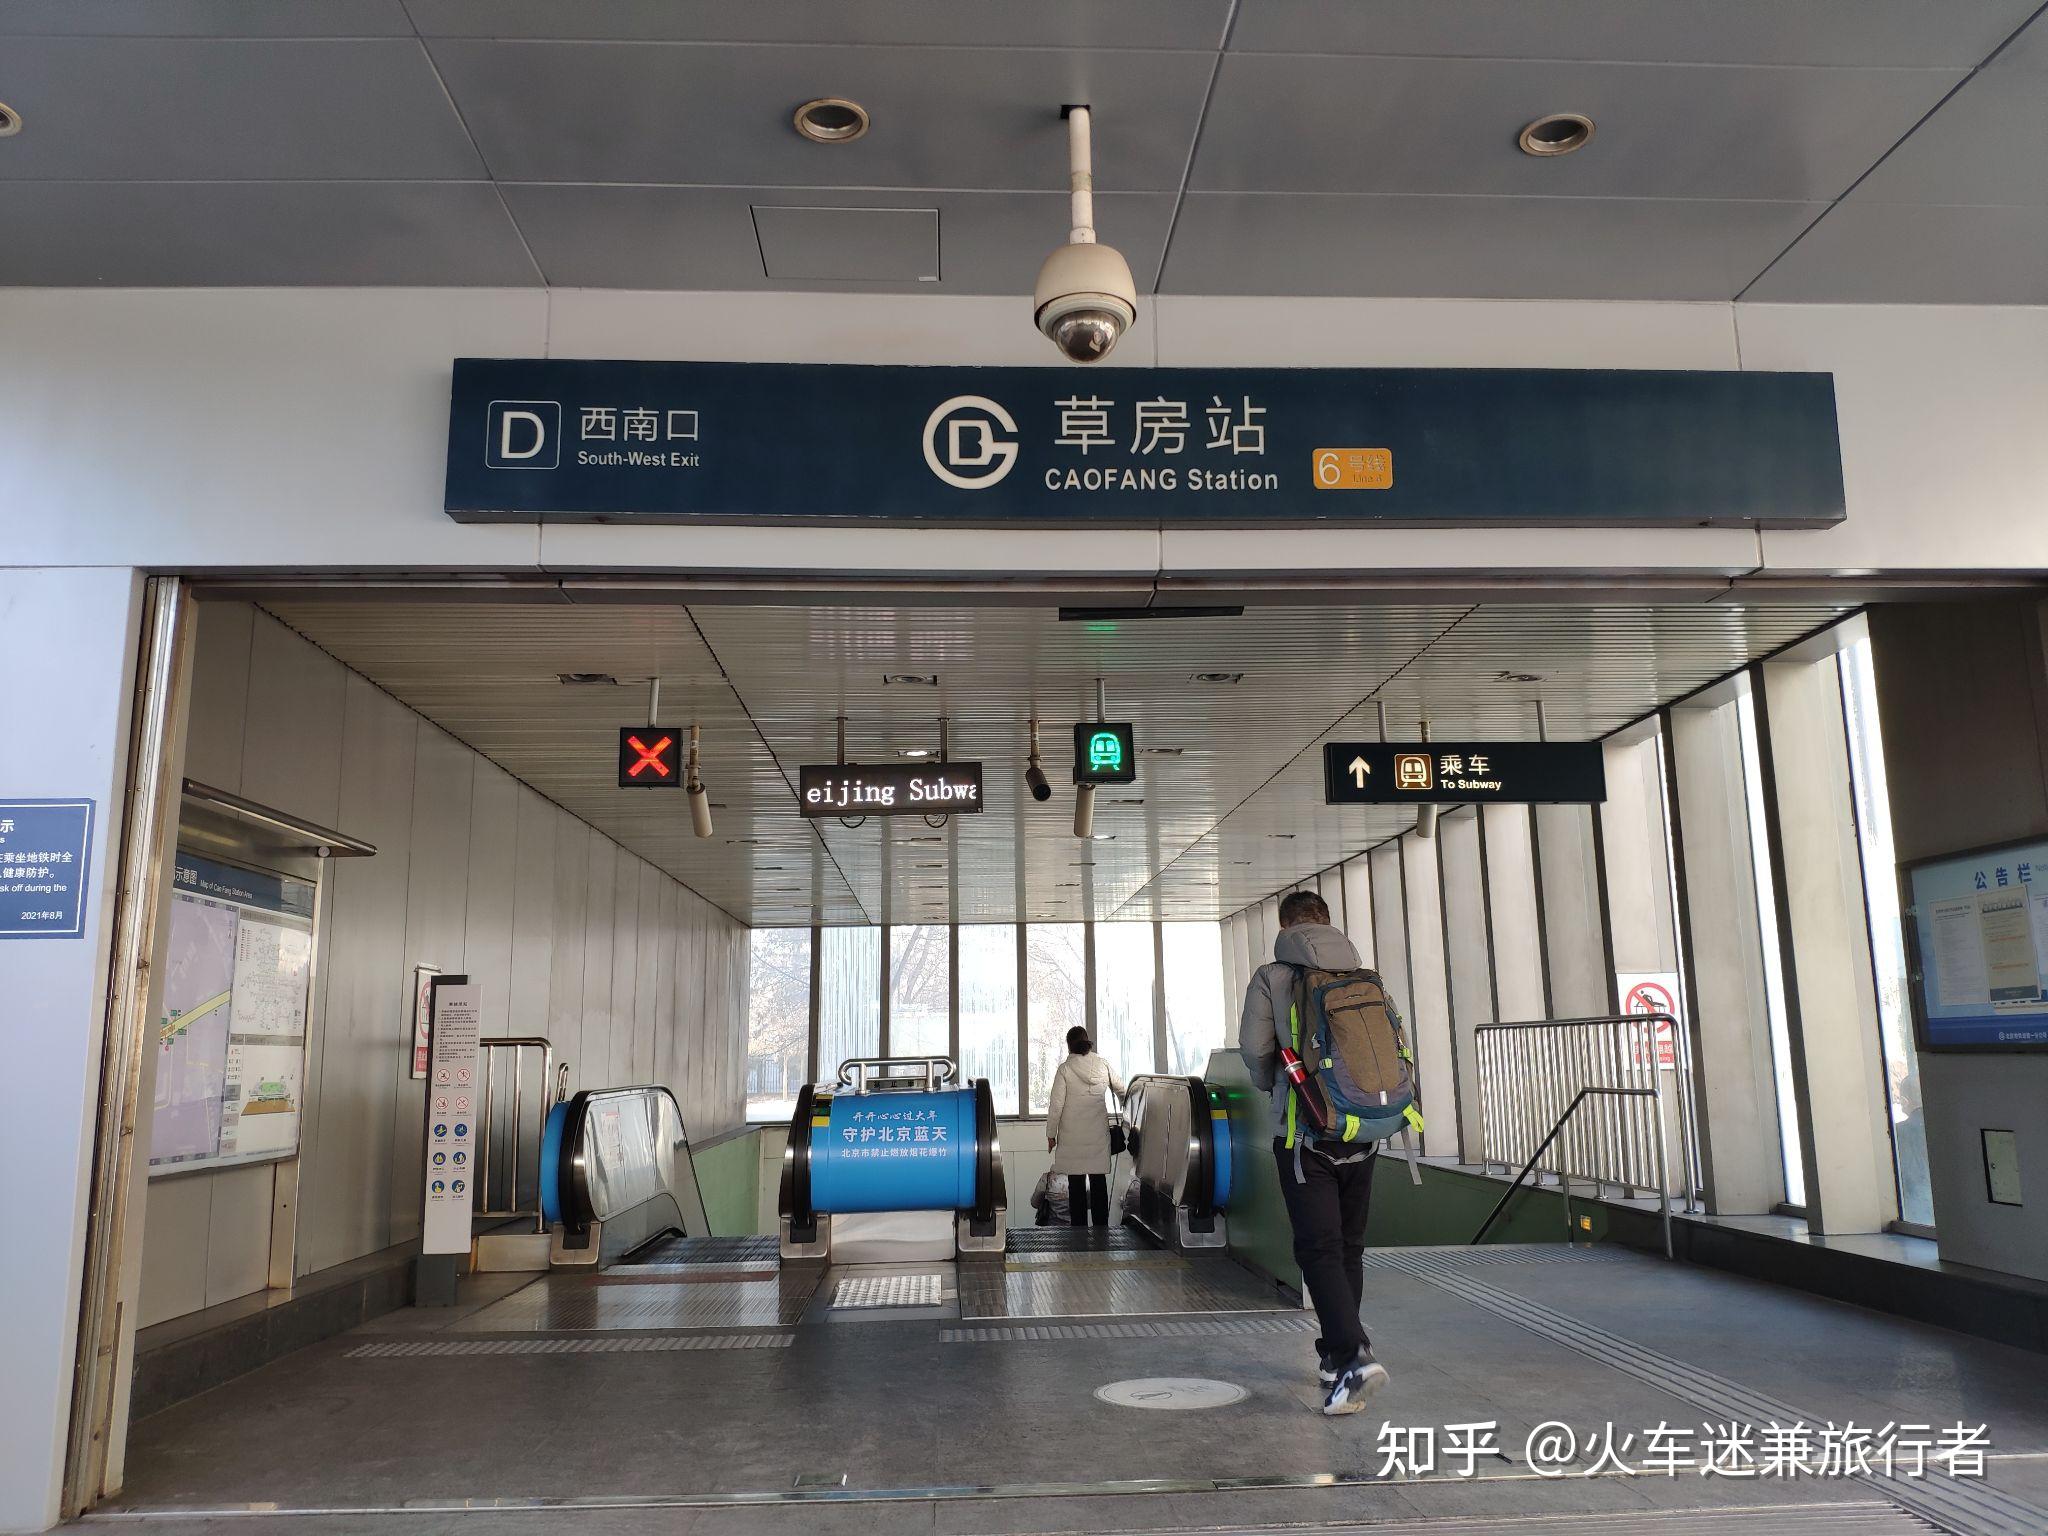 中铁十五局集团有限公司 集团新闻 北京地铁16号线南段正式开通运营